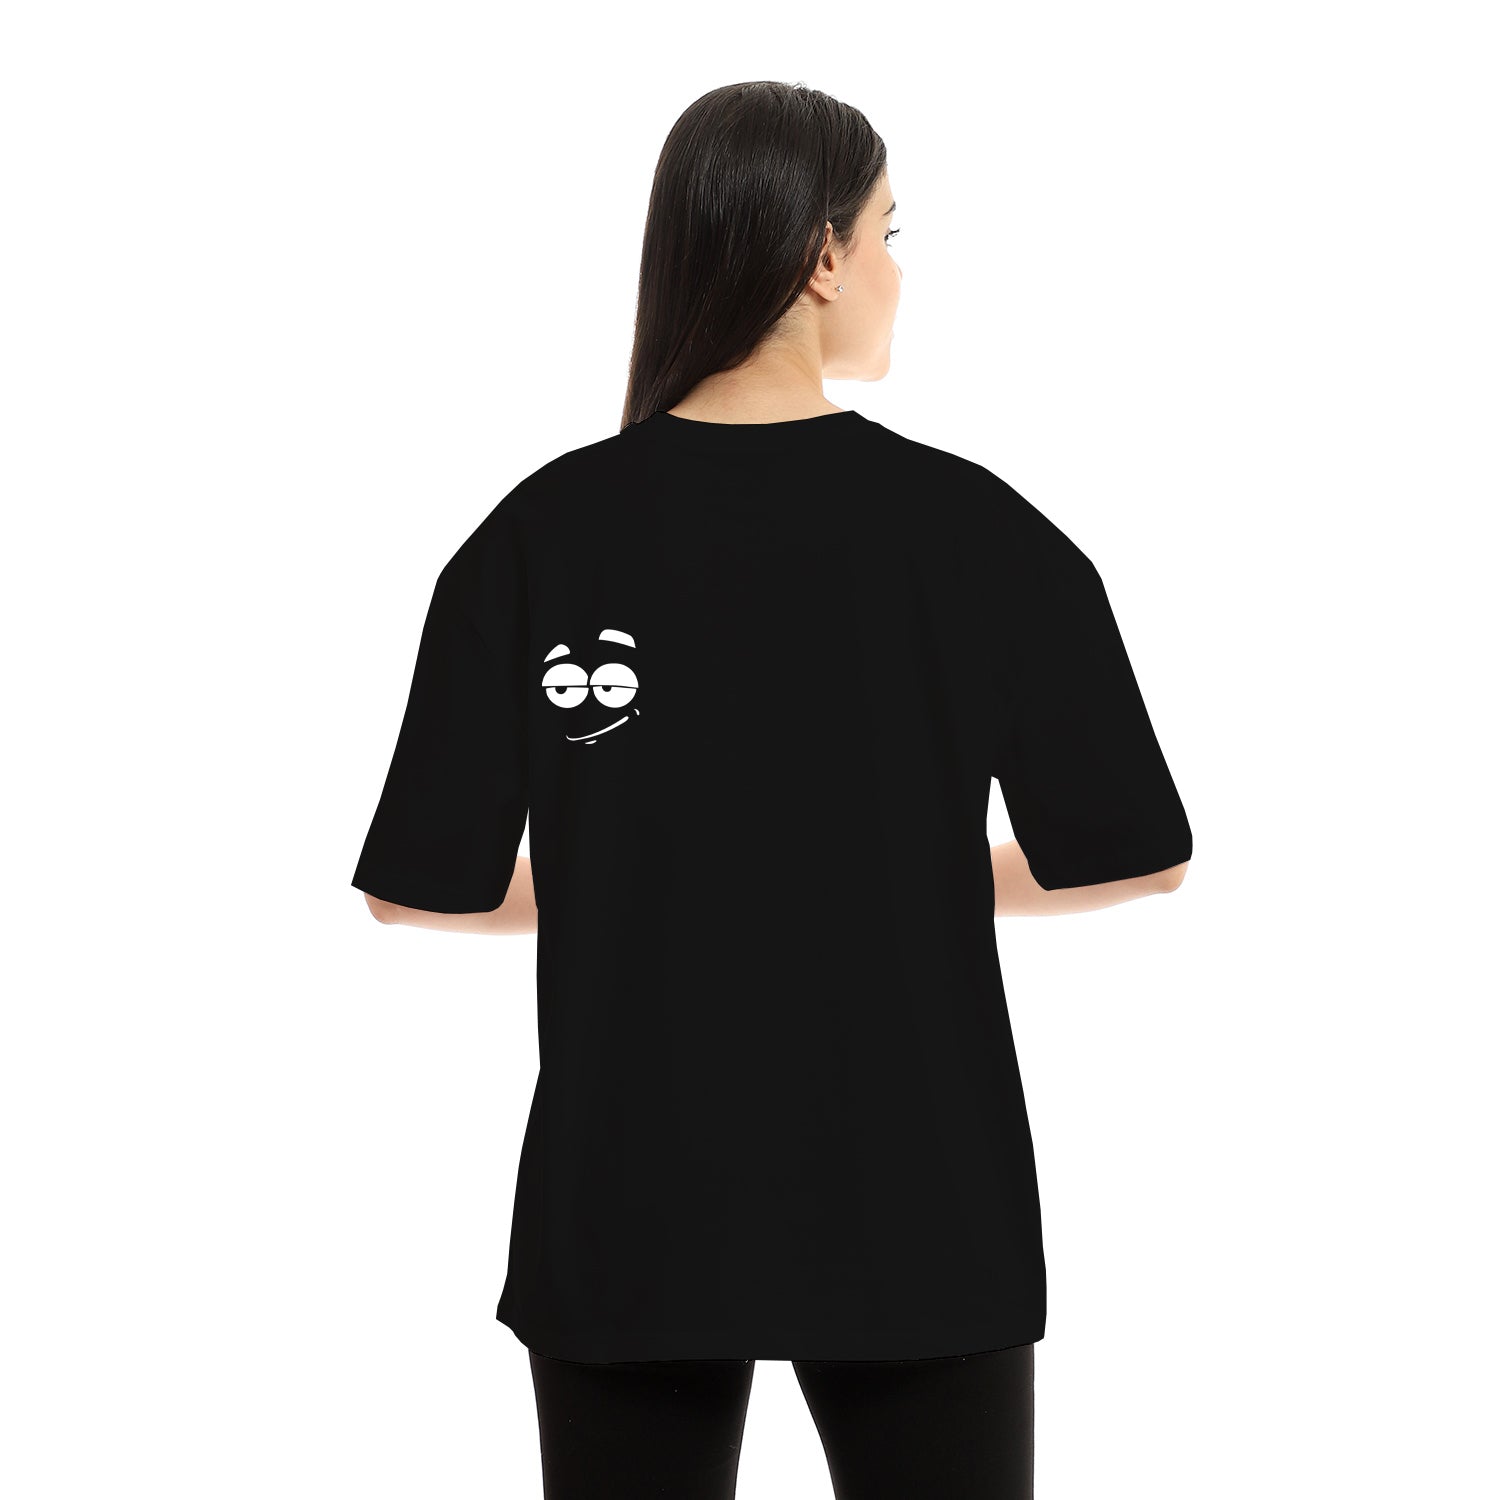 Tmam Unisex Oversized SS T-Shirt - Black